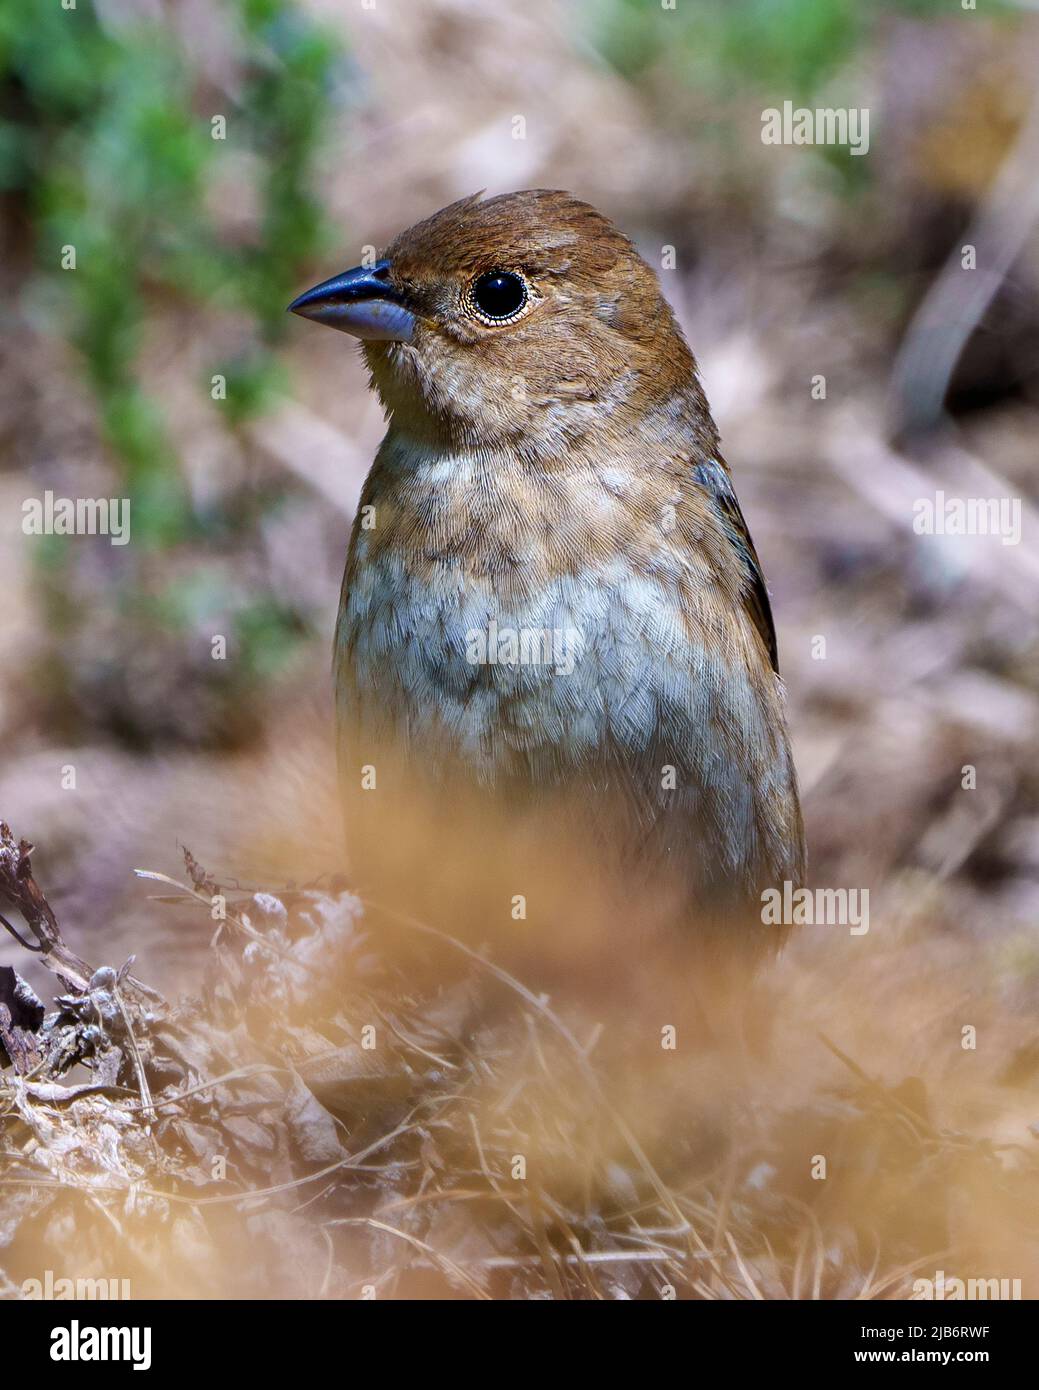 Sperling Gesicht Nahaufnahme mit einem unscharfen Hintergrund in seiner Umgebung und Lebensraum Umgebung. Haus Brown Sparrow. Stockfoto